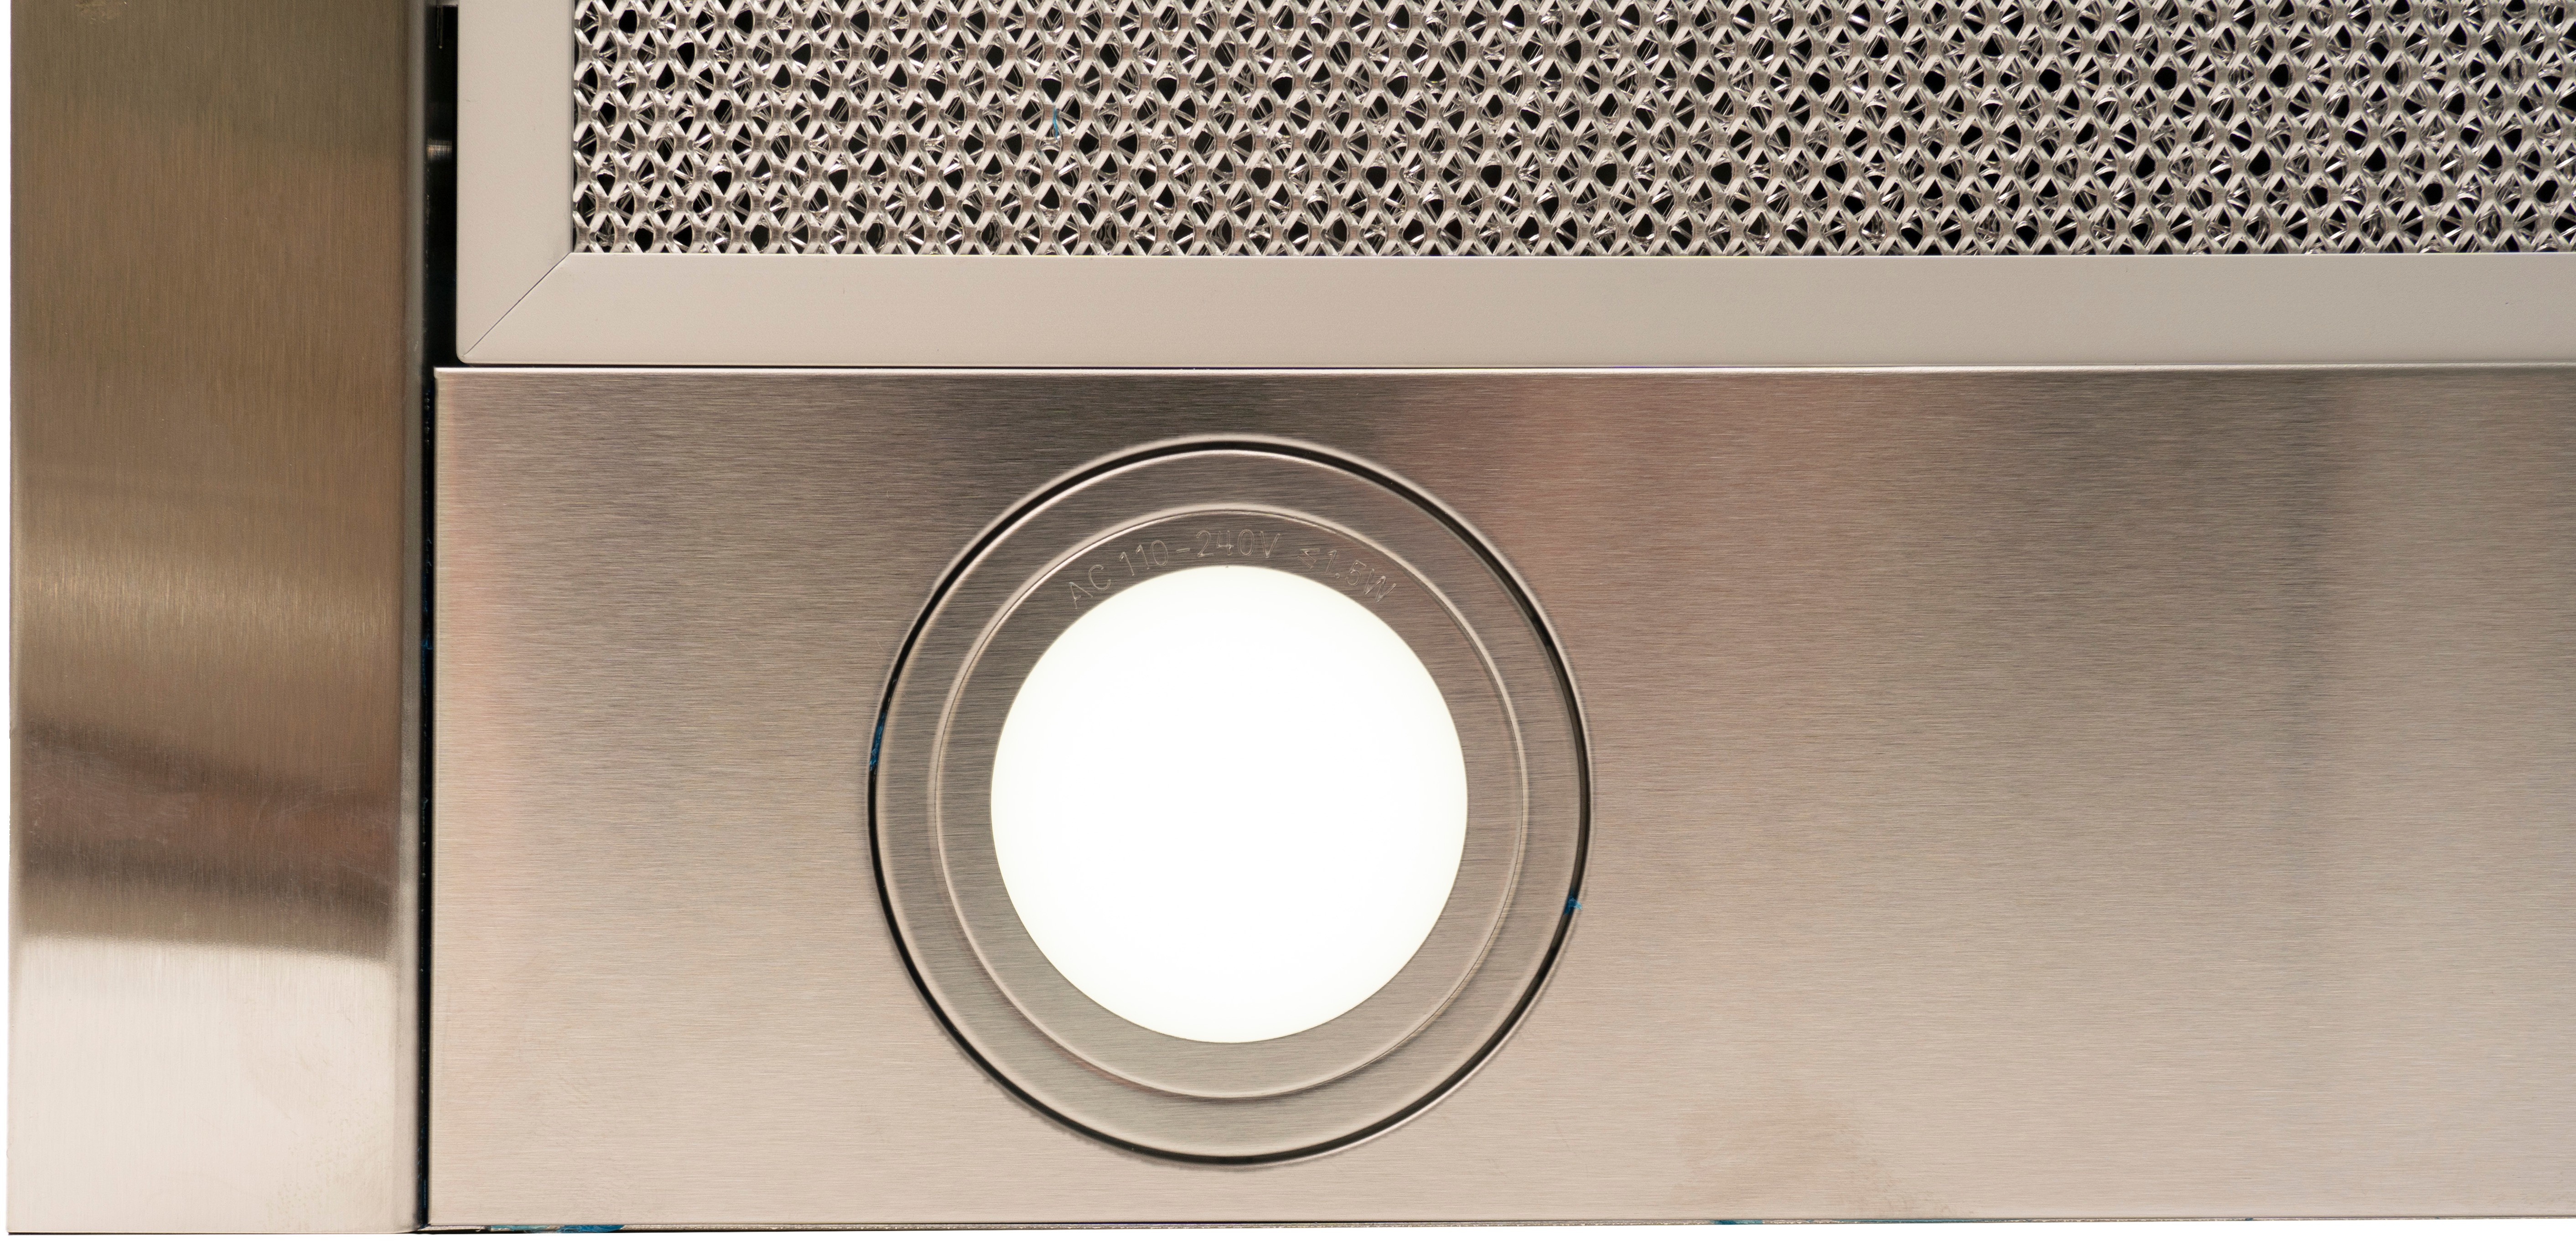 Кухонная вытяжка Ventolux GARDA 60 INOX (700) LED отзывы - изображения 5